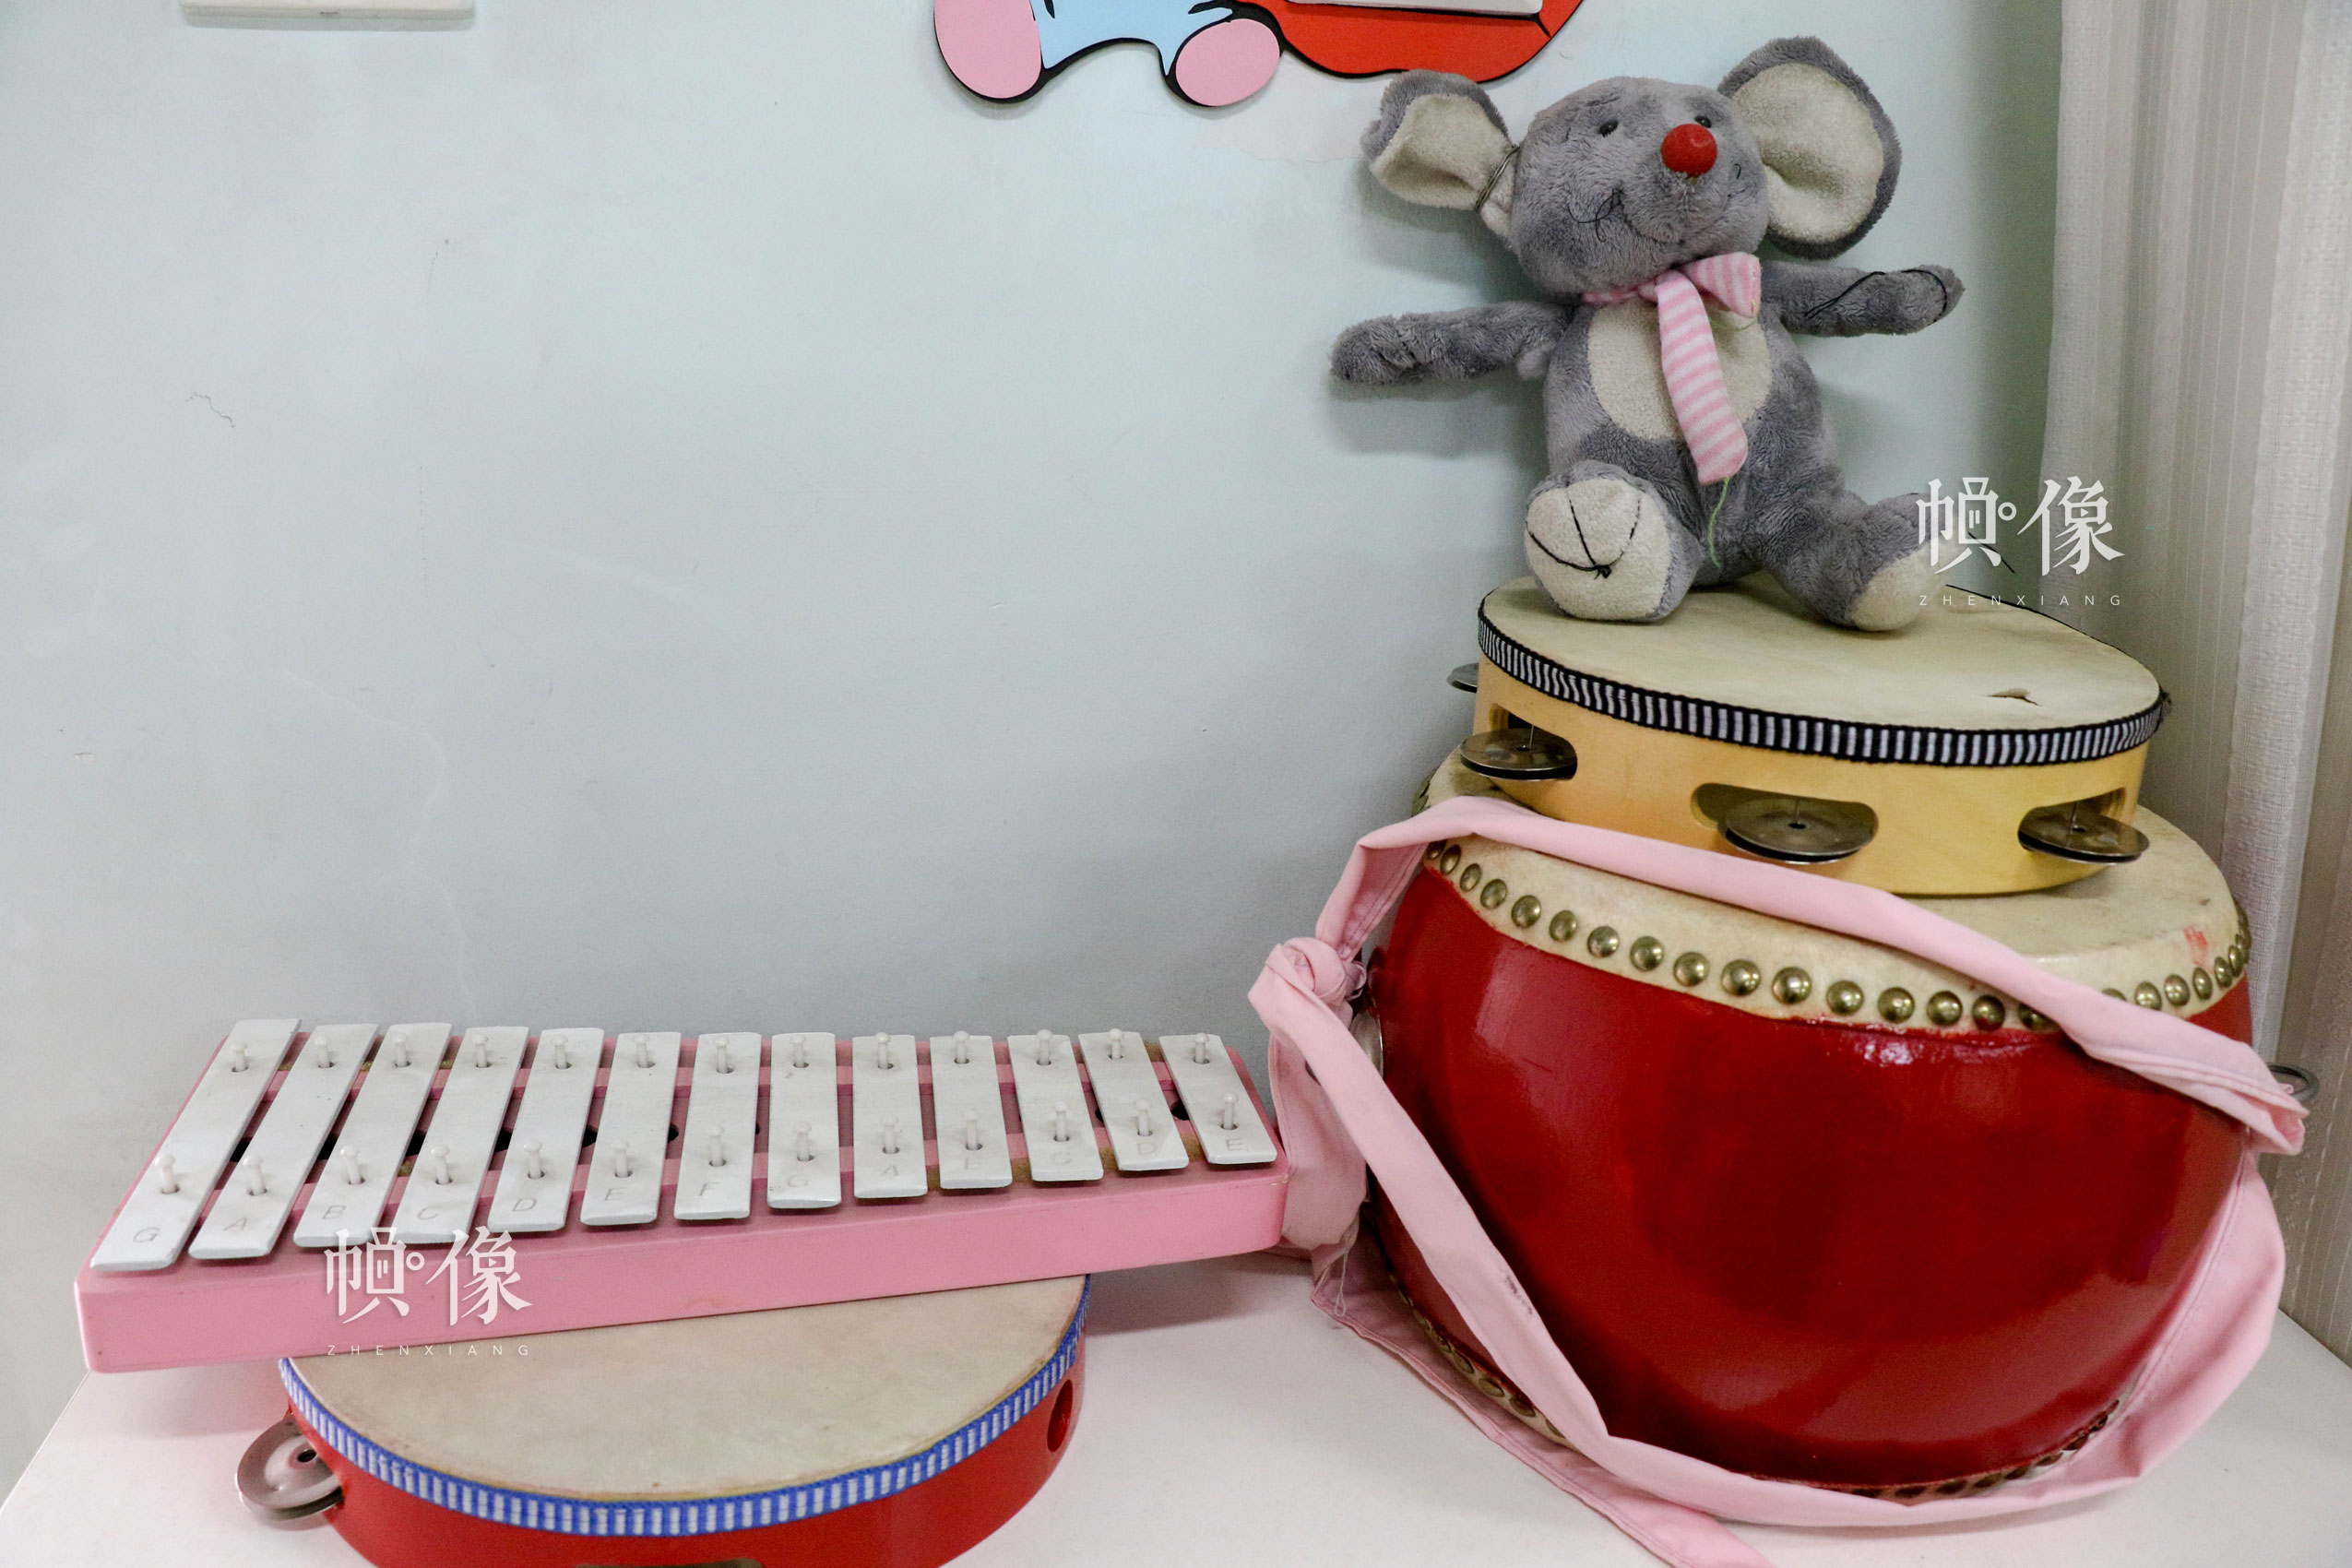 北京市天堂河女子教育矫治所团体活动室所摆放的乐器。中国网记者 赵超 摄